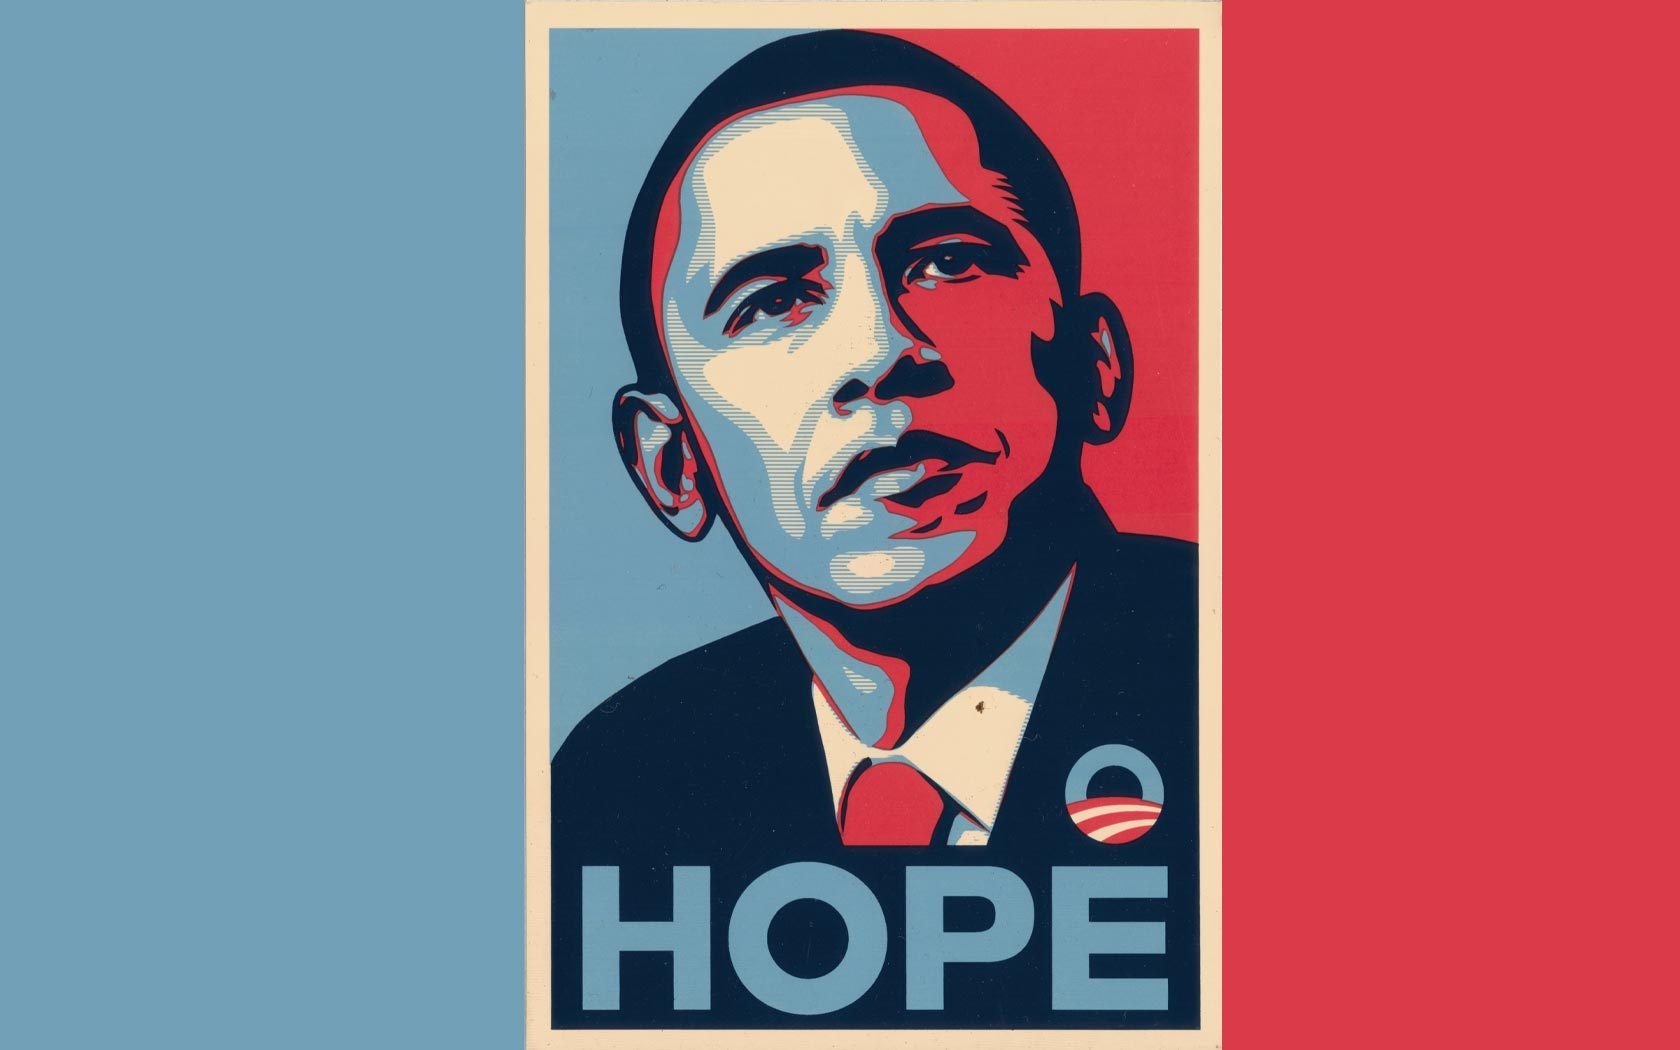 ObamaHope - Barack Obama Wallpaper 2587361 - Fanpop